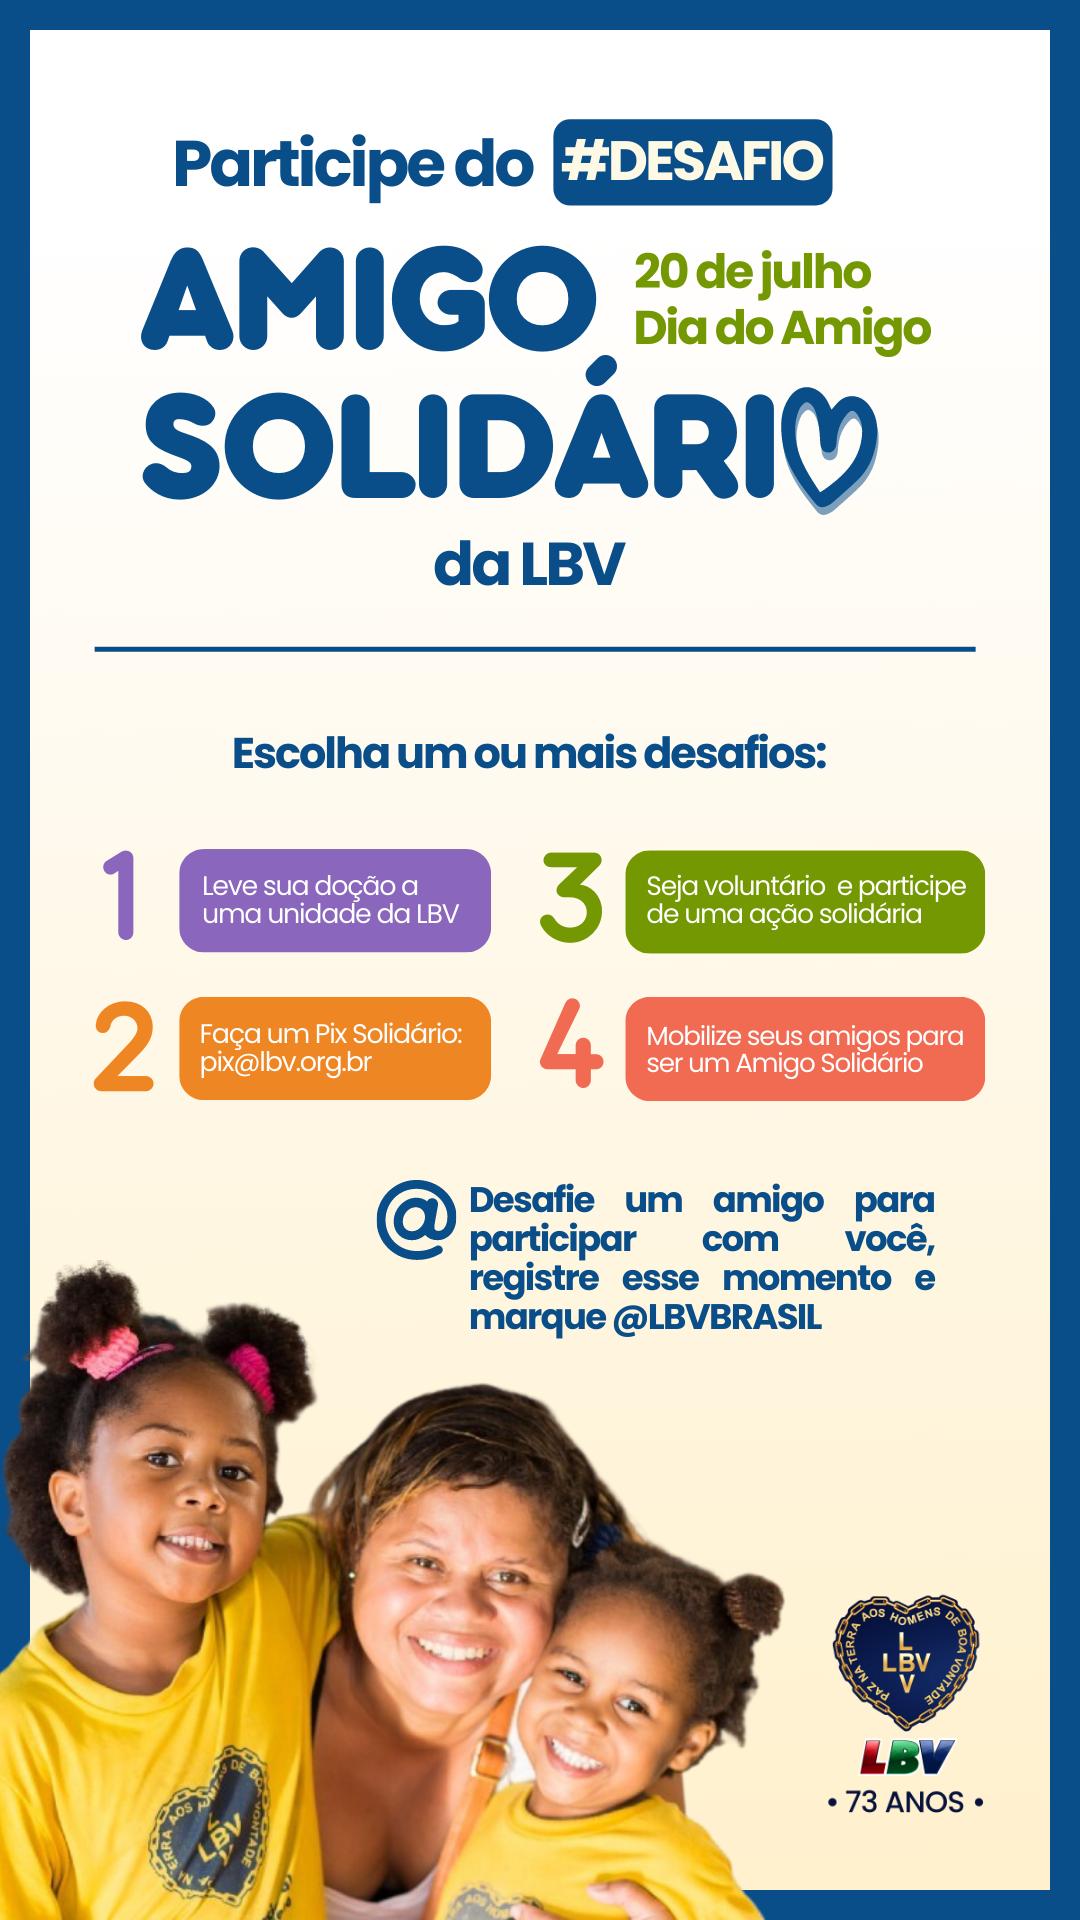 noticia LBV lança #desafio nacional na Semana do Dia do Amigo com Ação Solidária: participe, convide um amigo e marque @LBVBrasil